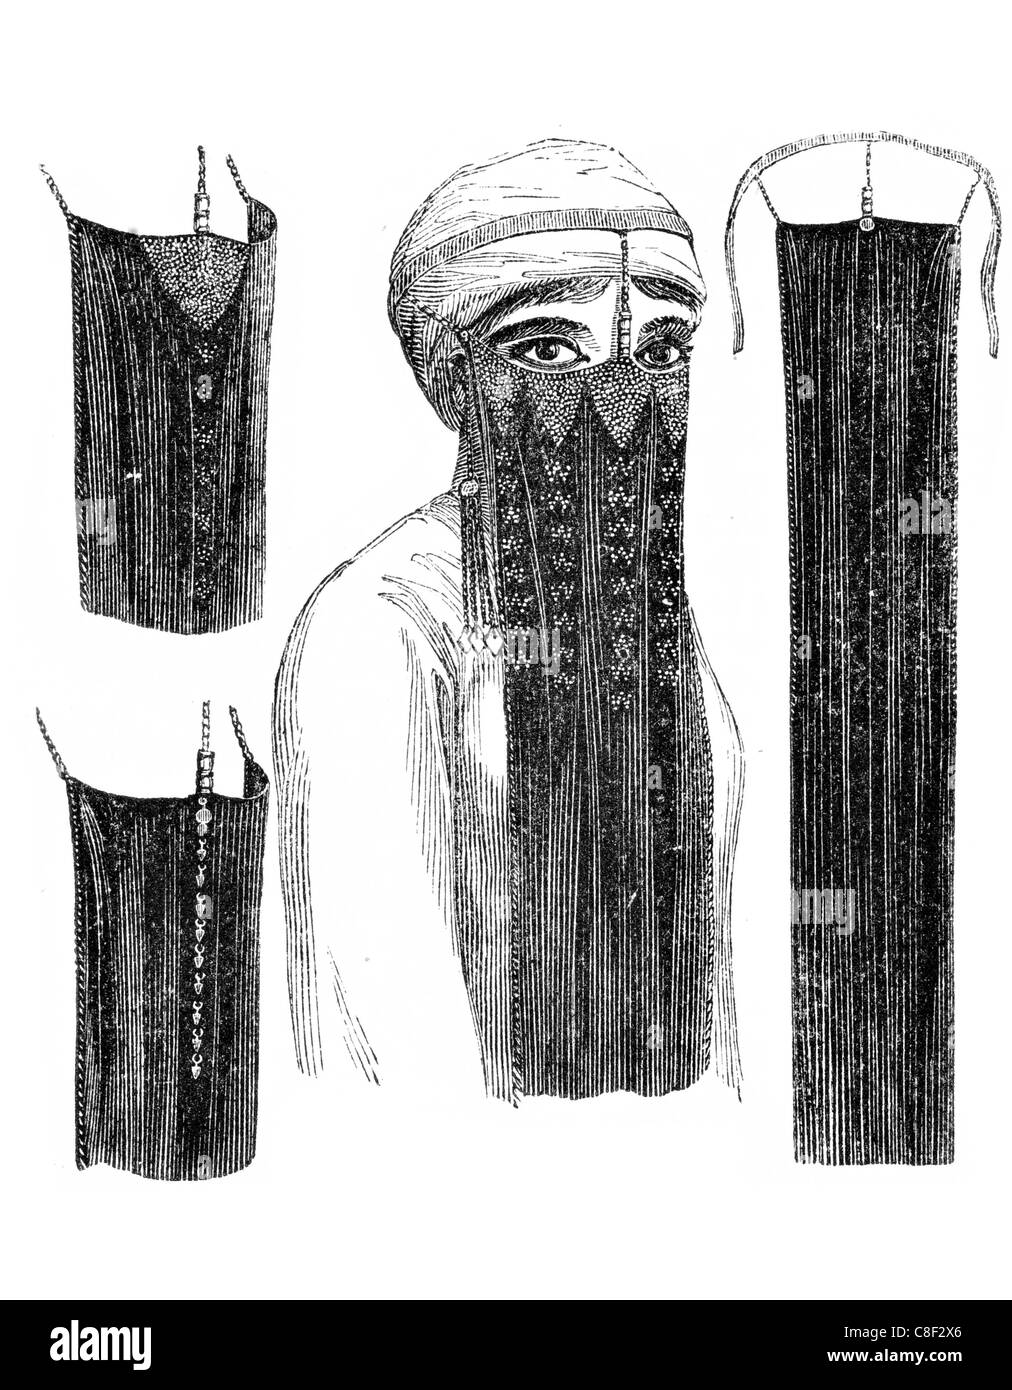 Schleier der ägyptischen Frauen Kostüm Kostüme Kleidung Kleidung Kleiderschrank Kleid Gewand Bekleidung Textilien Textil Stoff Bekleidungsstoffe Stockfoto